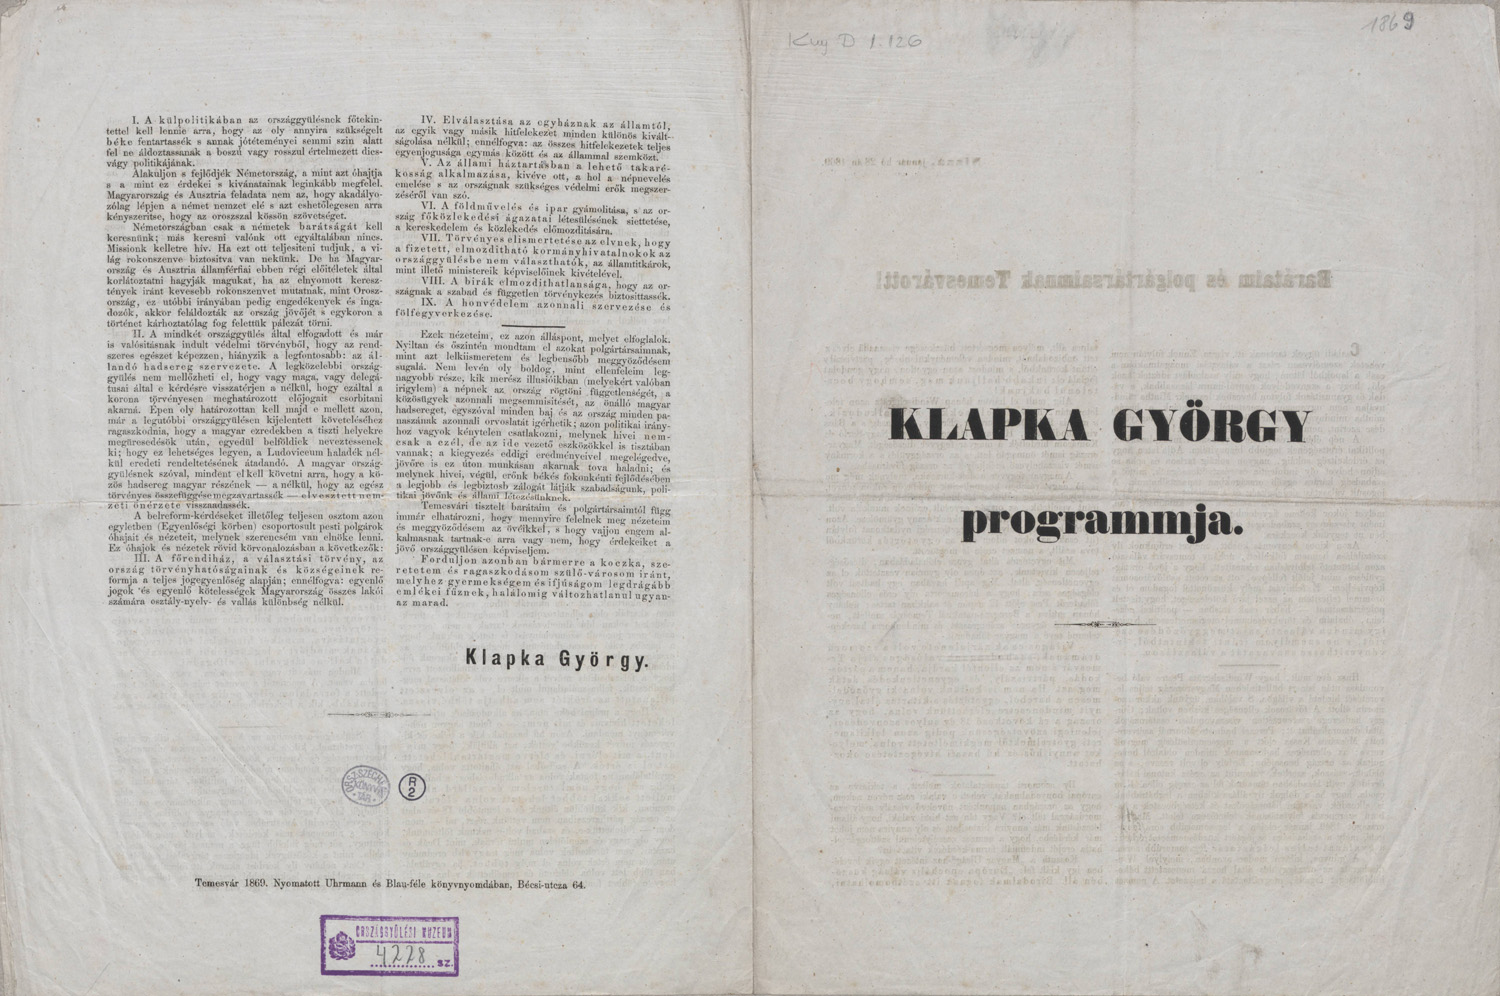 Klapka György programmja. Temesvár, Uhrmann és Blau-féle könyvny., 1869. – Plakát- és Kisnyomtatványtár, Kny.D 1.126 